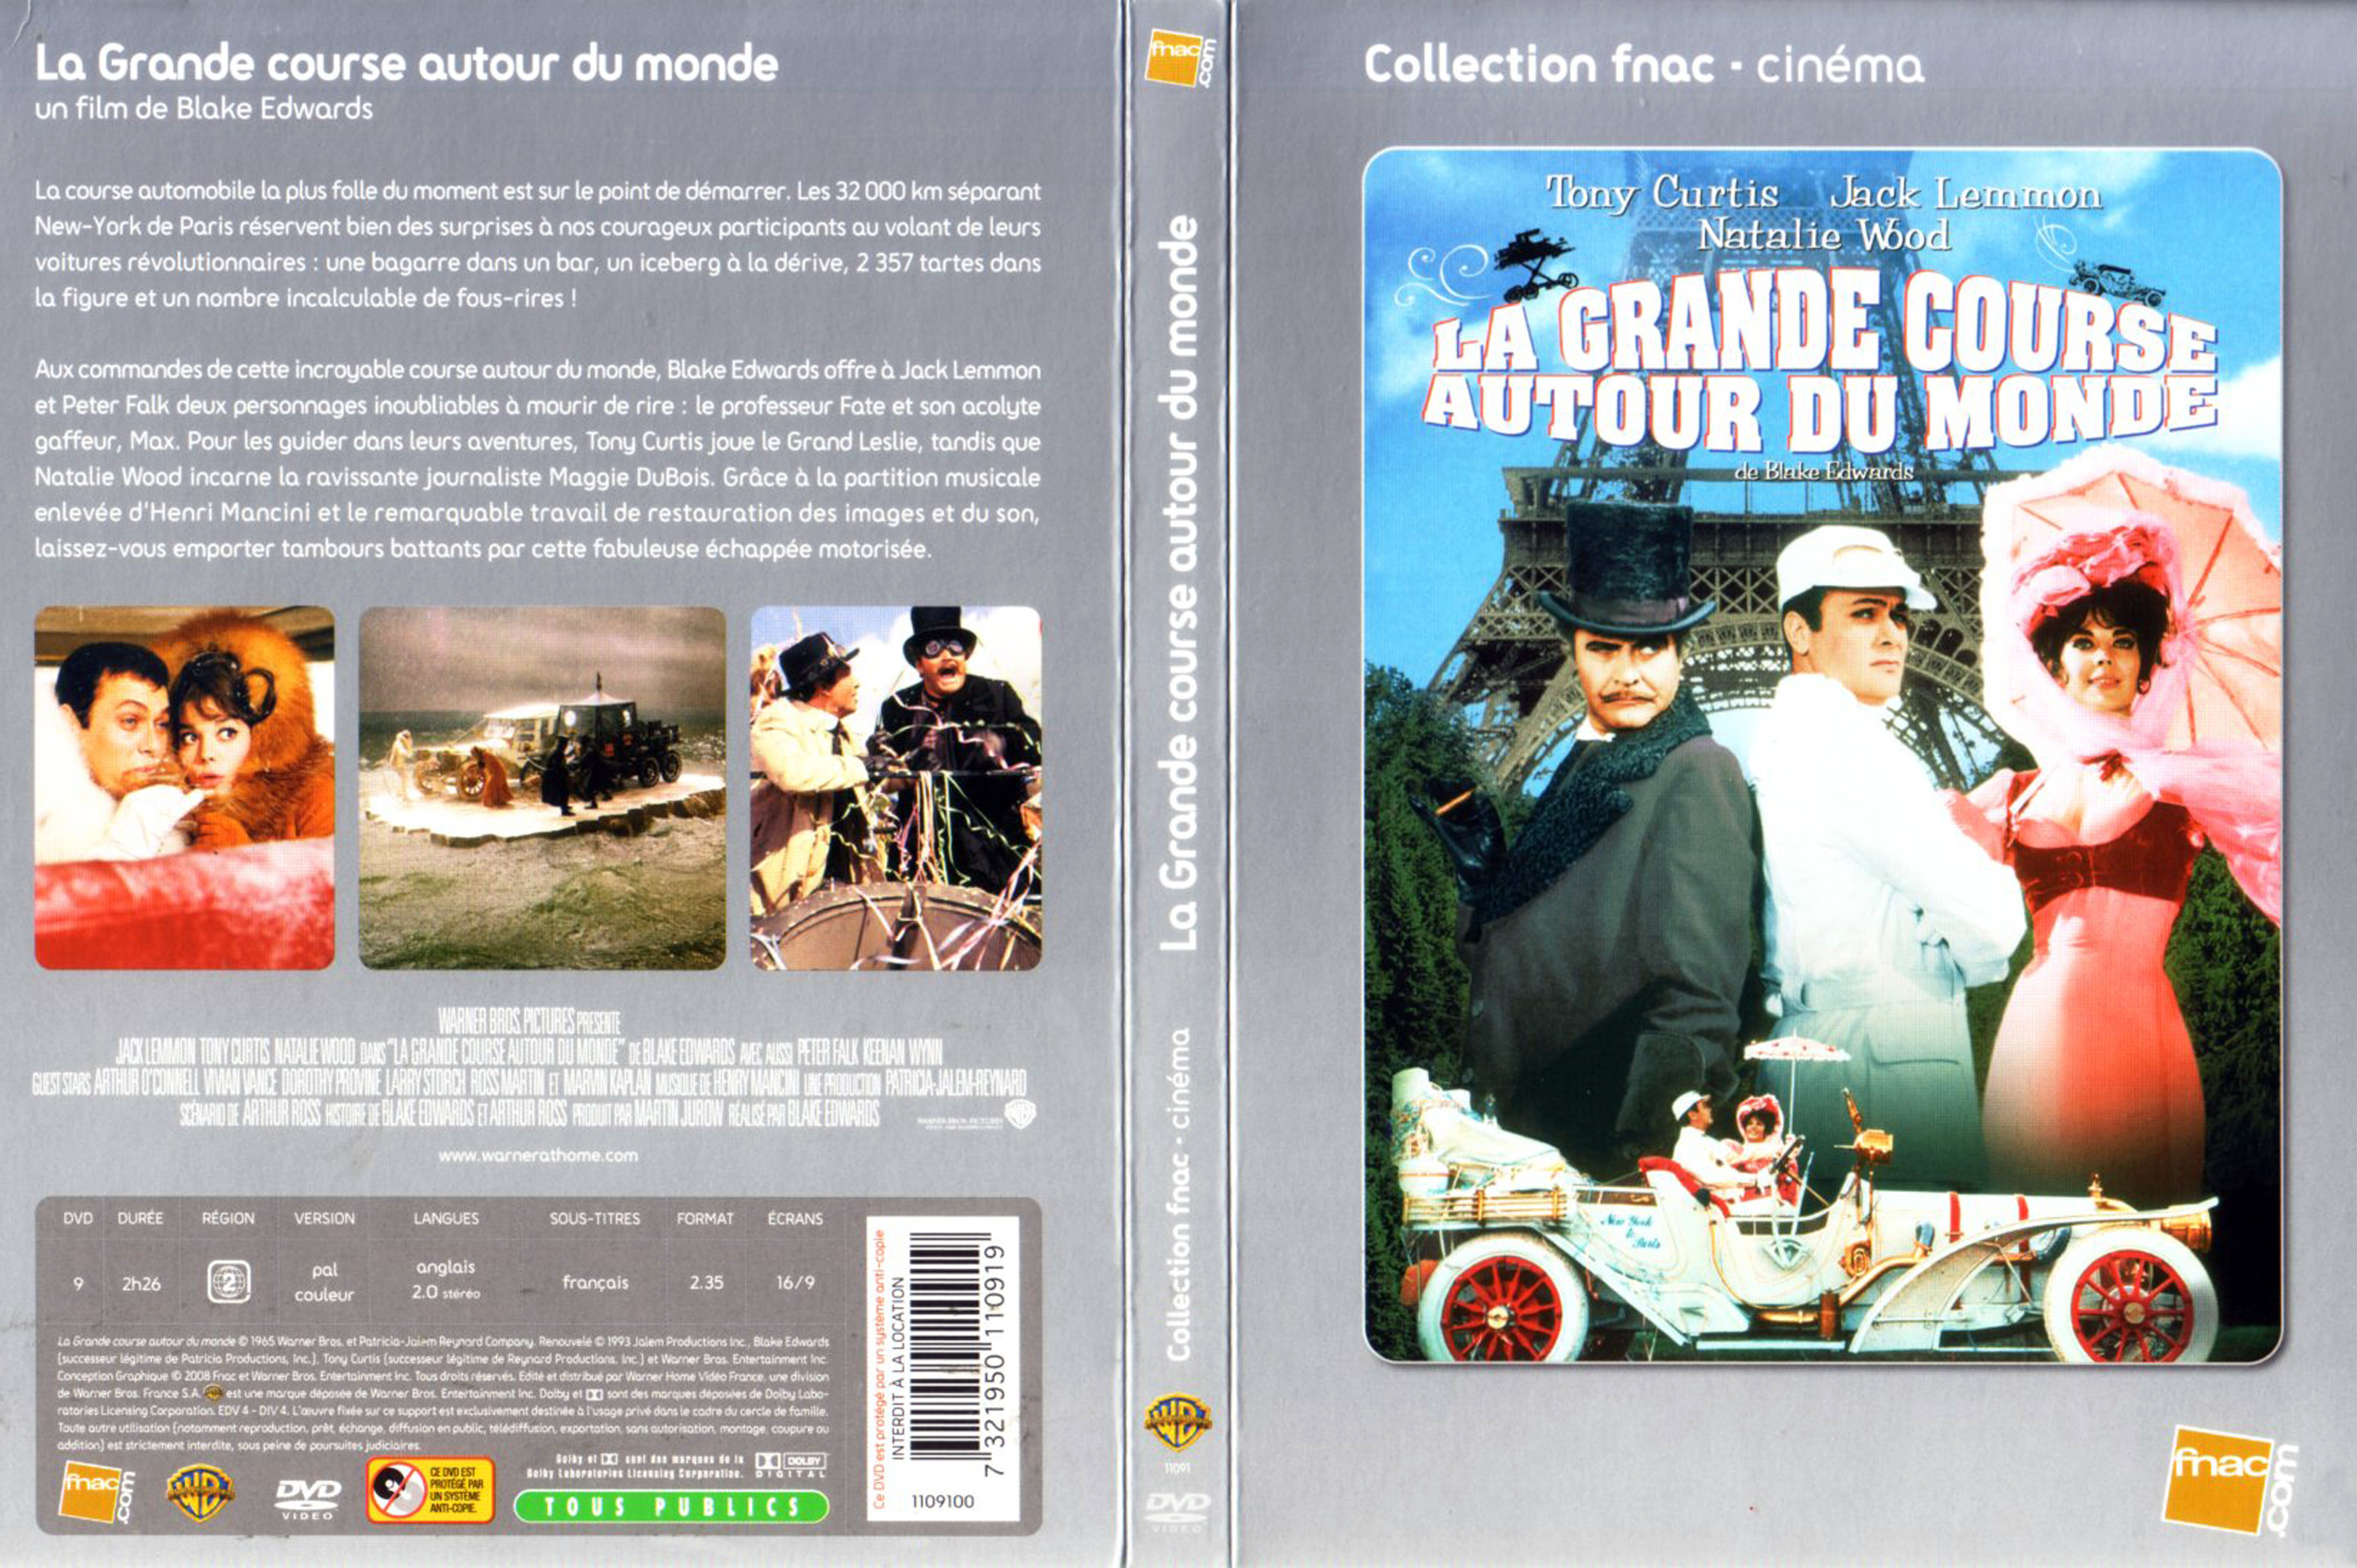 Jaquette DVD de La grande course autour du monde - Cinéma Passion